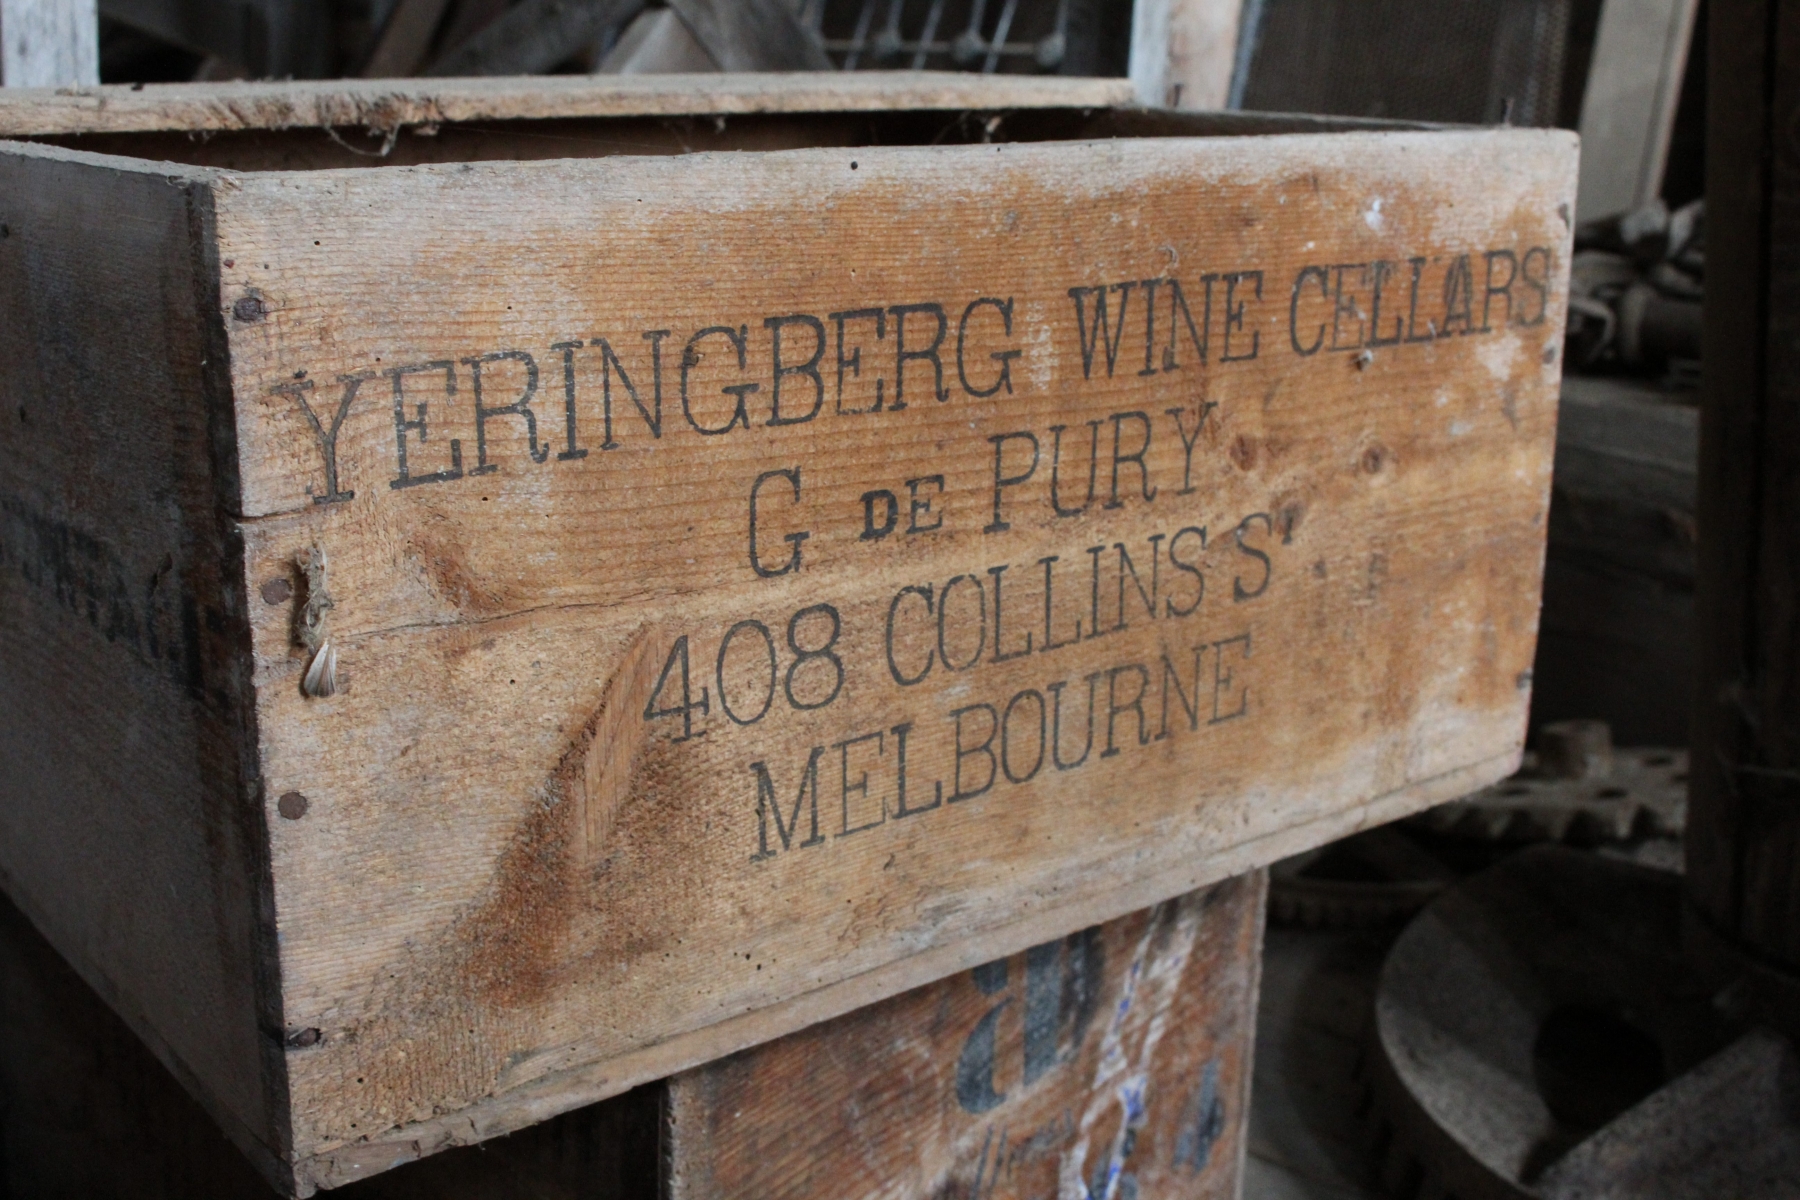 Une caisse de vin australien estampillée de Pury.